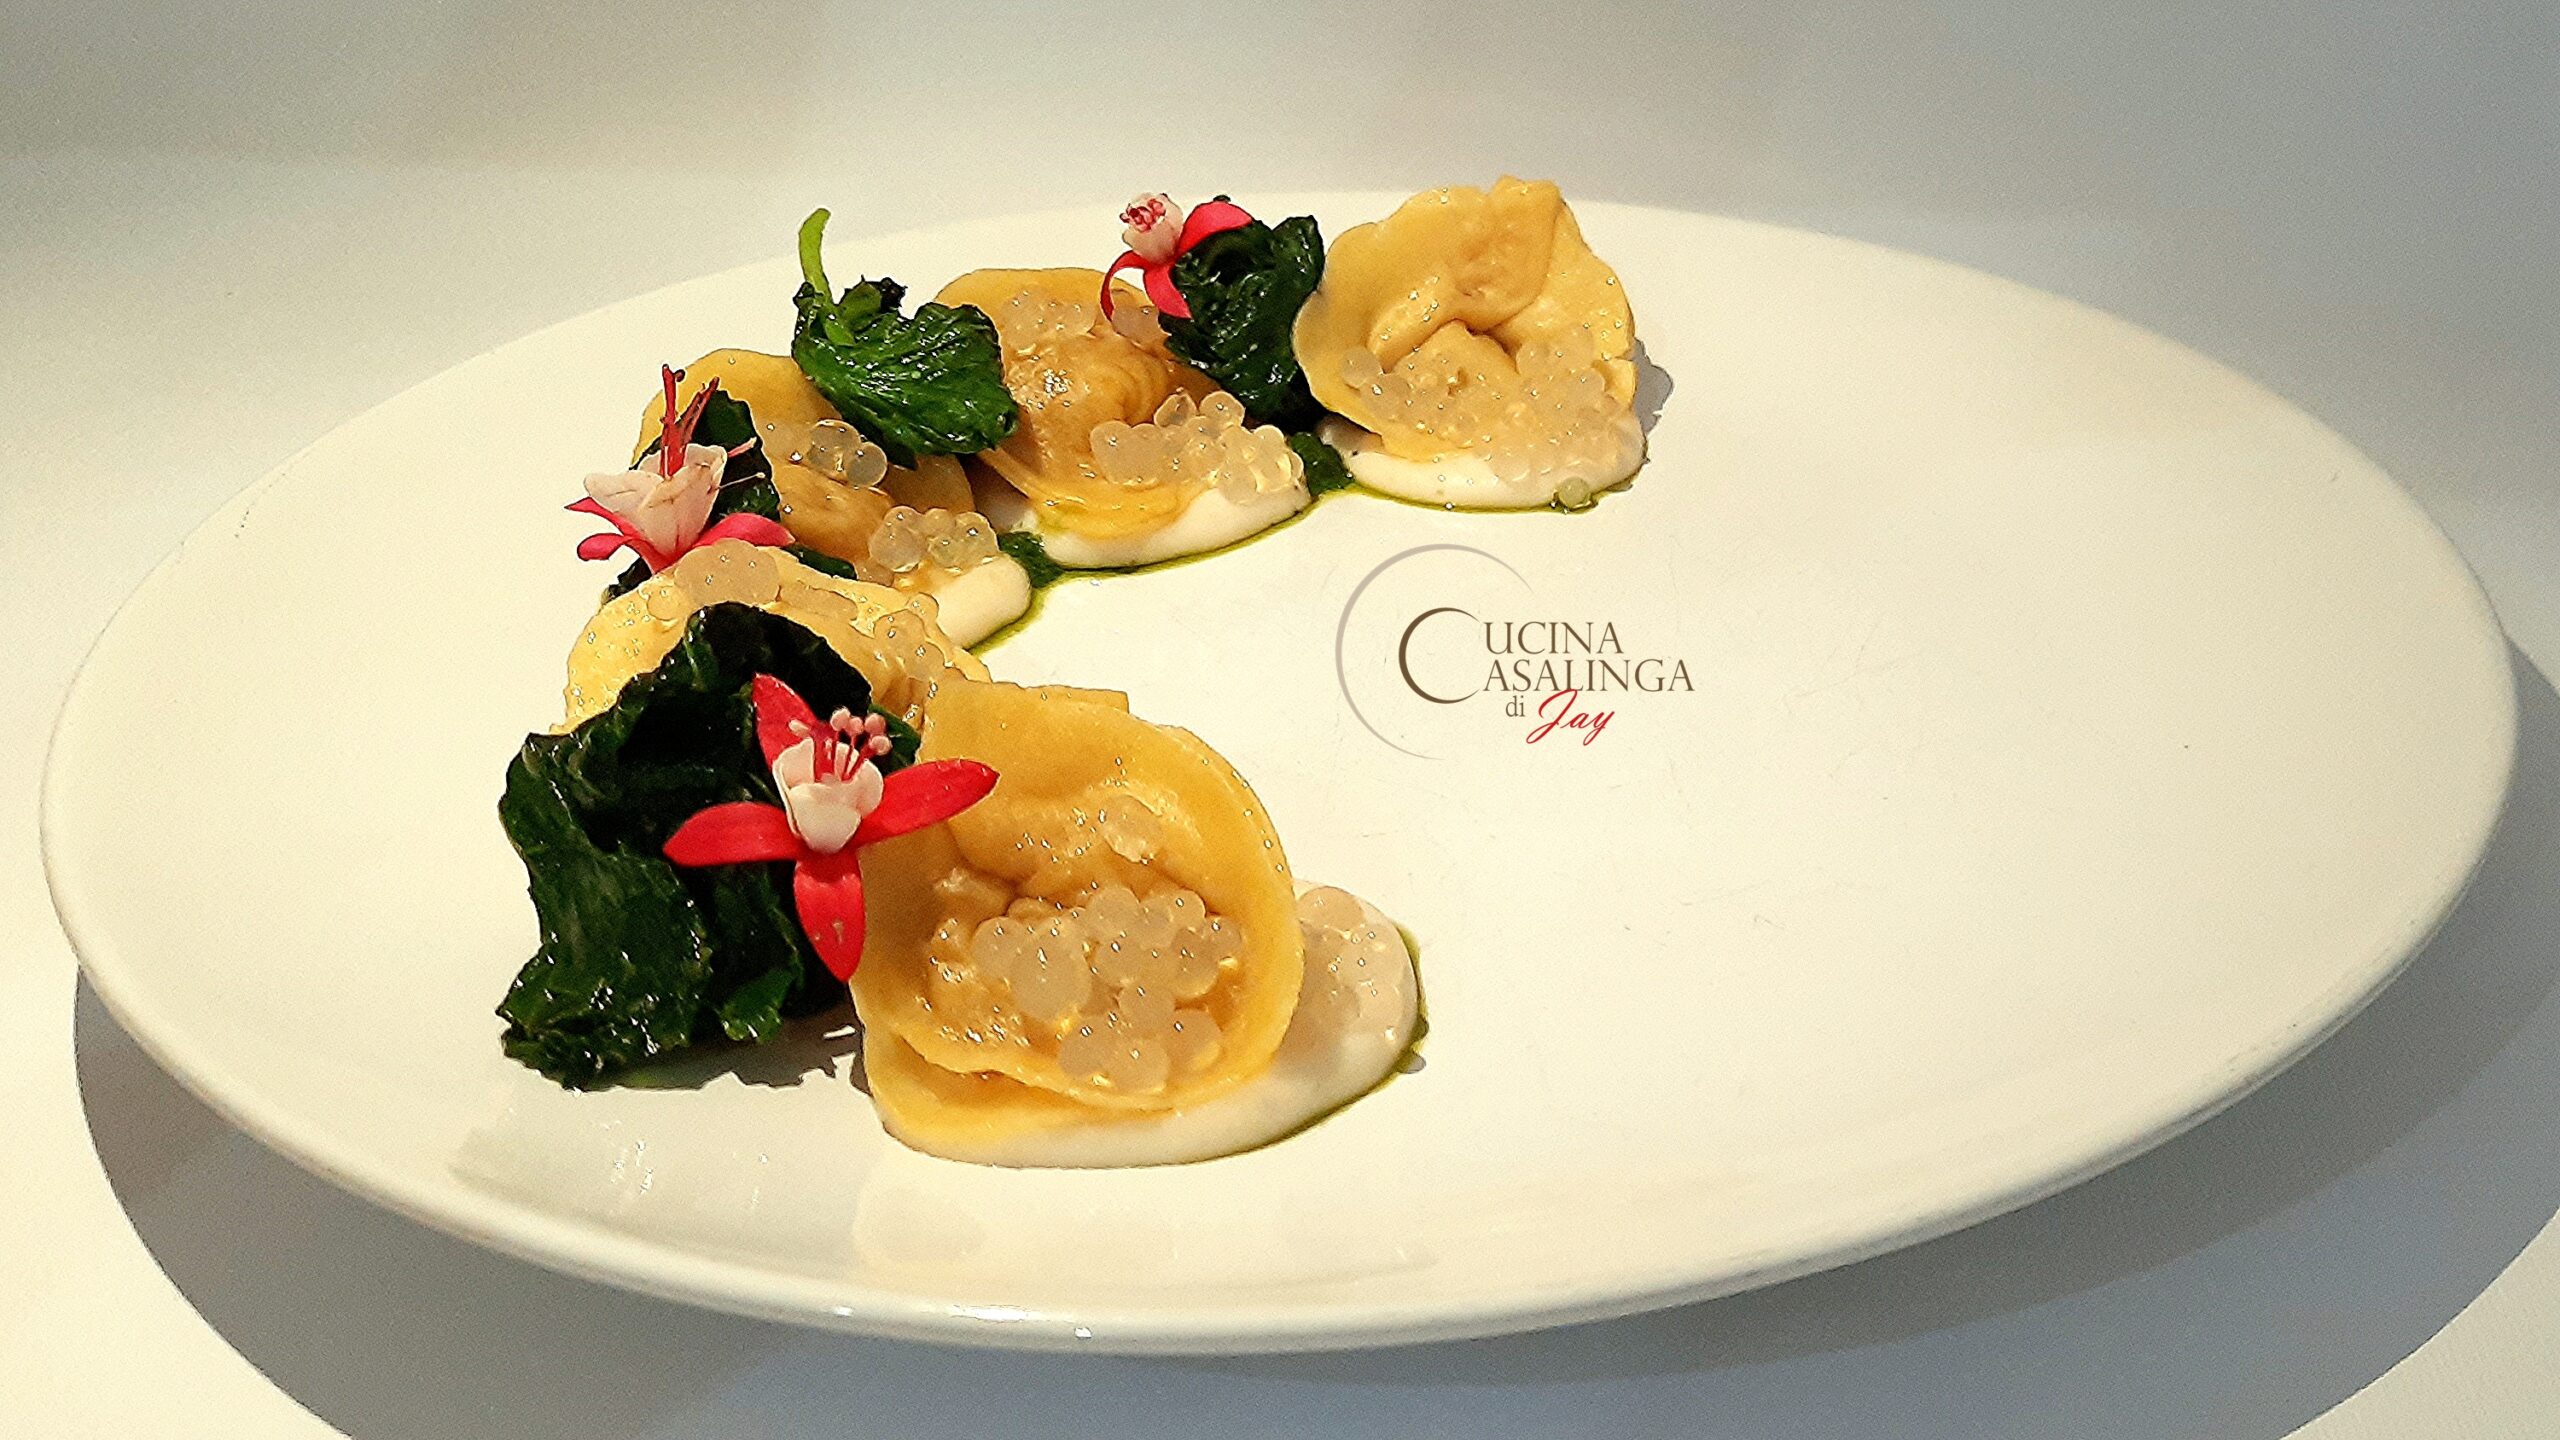 : ricetta prima classificata al contest Caseus Veneti 2020 con tortelli all’Asiago Dop e cipolla caramellata